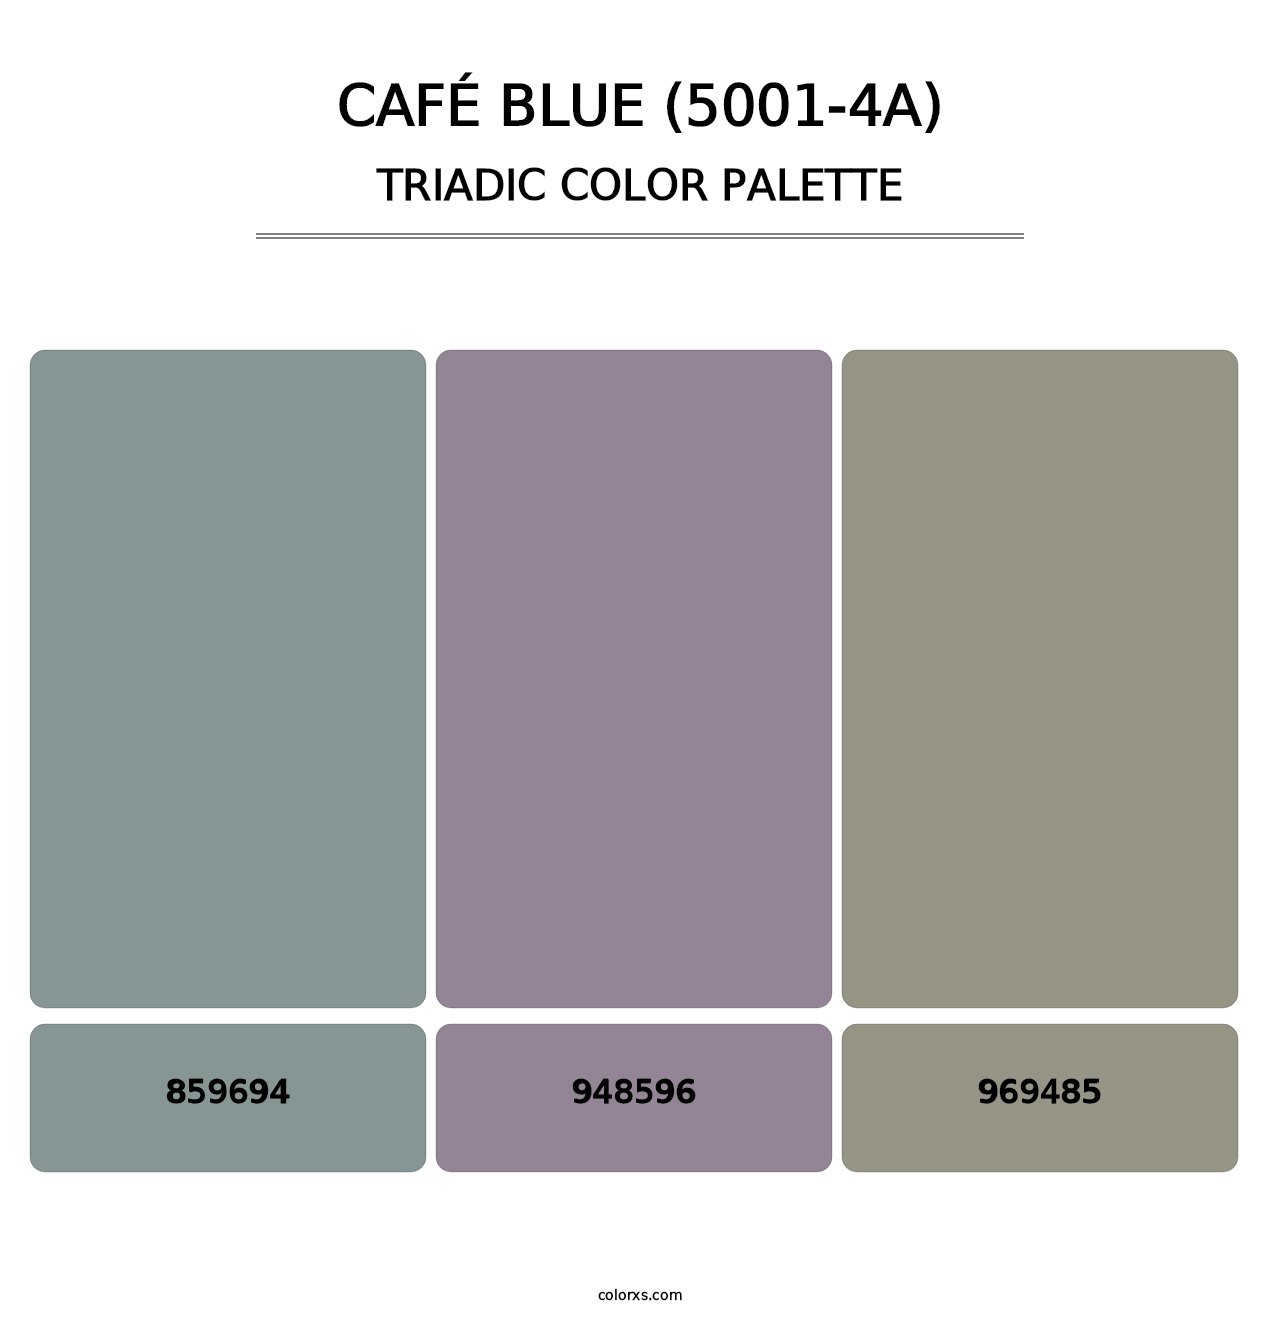 Café Blue (5001-4A) - Triadic Color Palette